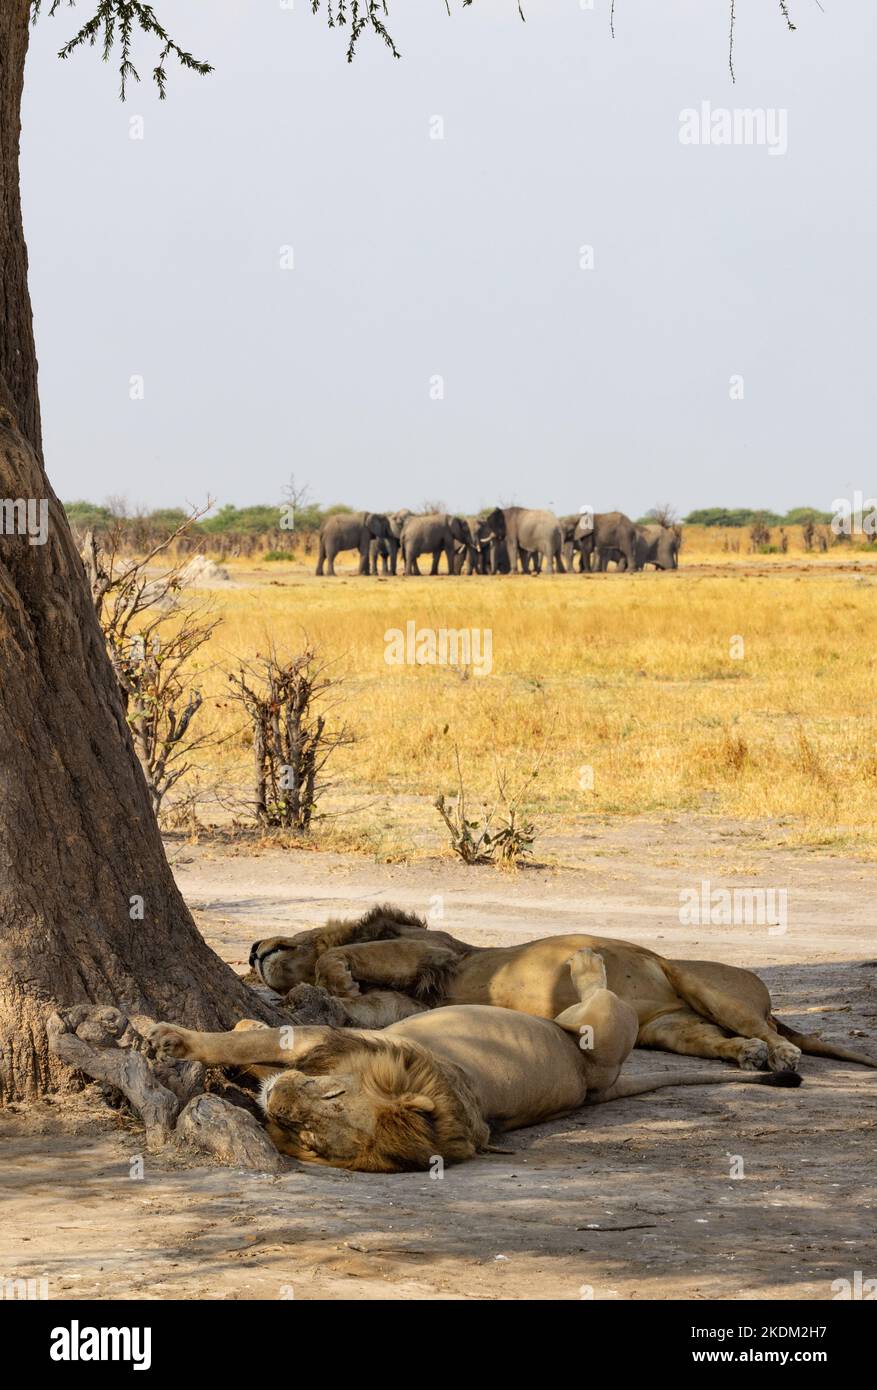 Tierszene in Afrika; zwei männliche Löwen, die unter einem Baum ruhen, mit Elefanten im Hintergrund; Chobe National Park, Botswana Africa. Afrikanische Landschaft. Stockfoto